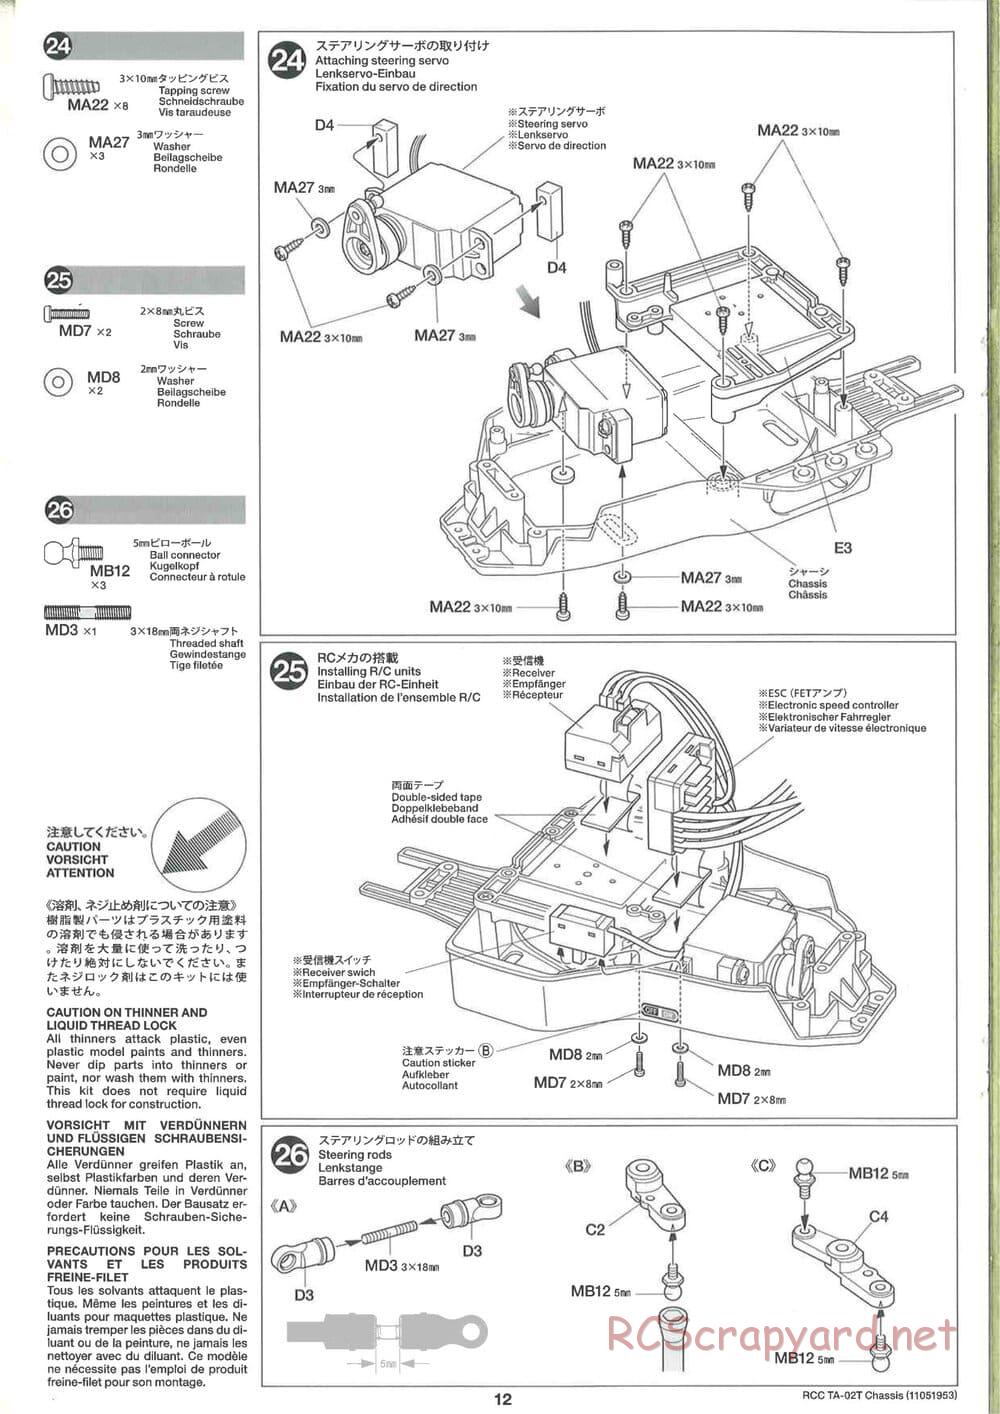 Tamiya - TA-02T Chassis - Manual - Page 12